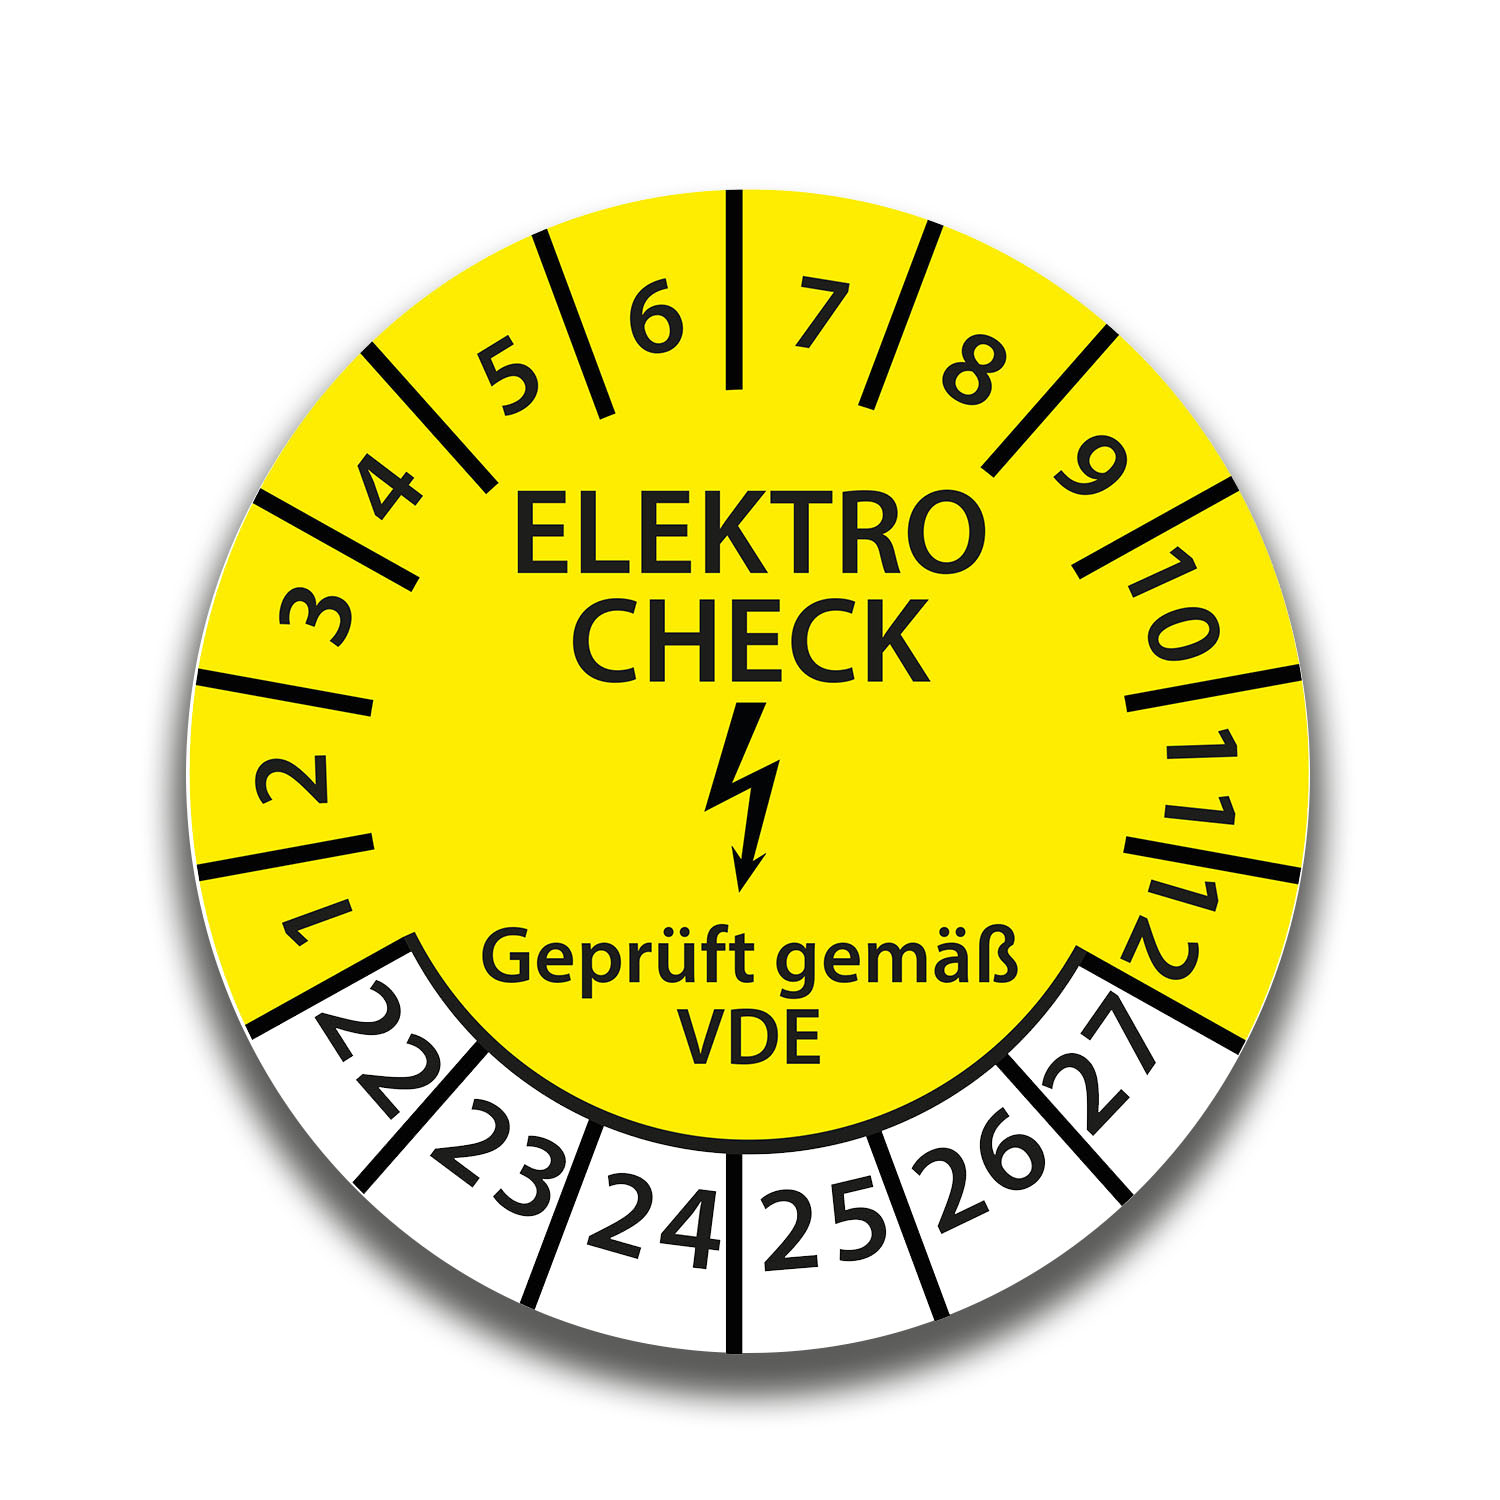 Ø 30mm Elektrocheck Prüfaufkleber Prüfetikett 10 e-Check / Elektro Prüfplakette Aufkleber gelb Jahr 2017 bis 2022 mit UV-Schutzlaminat 